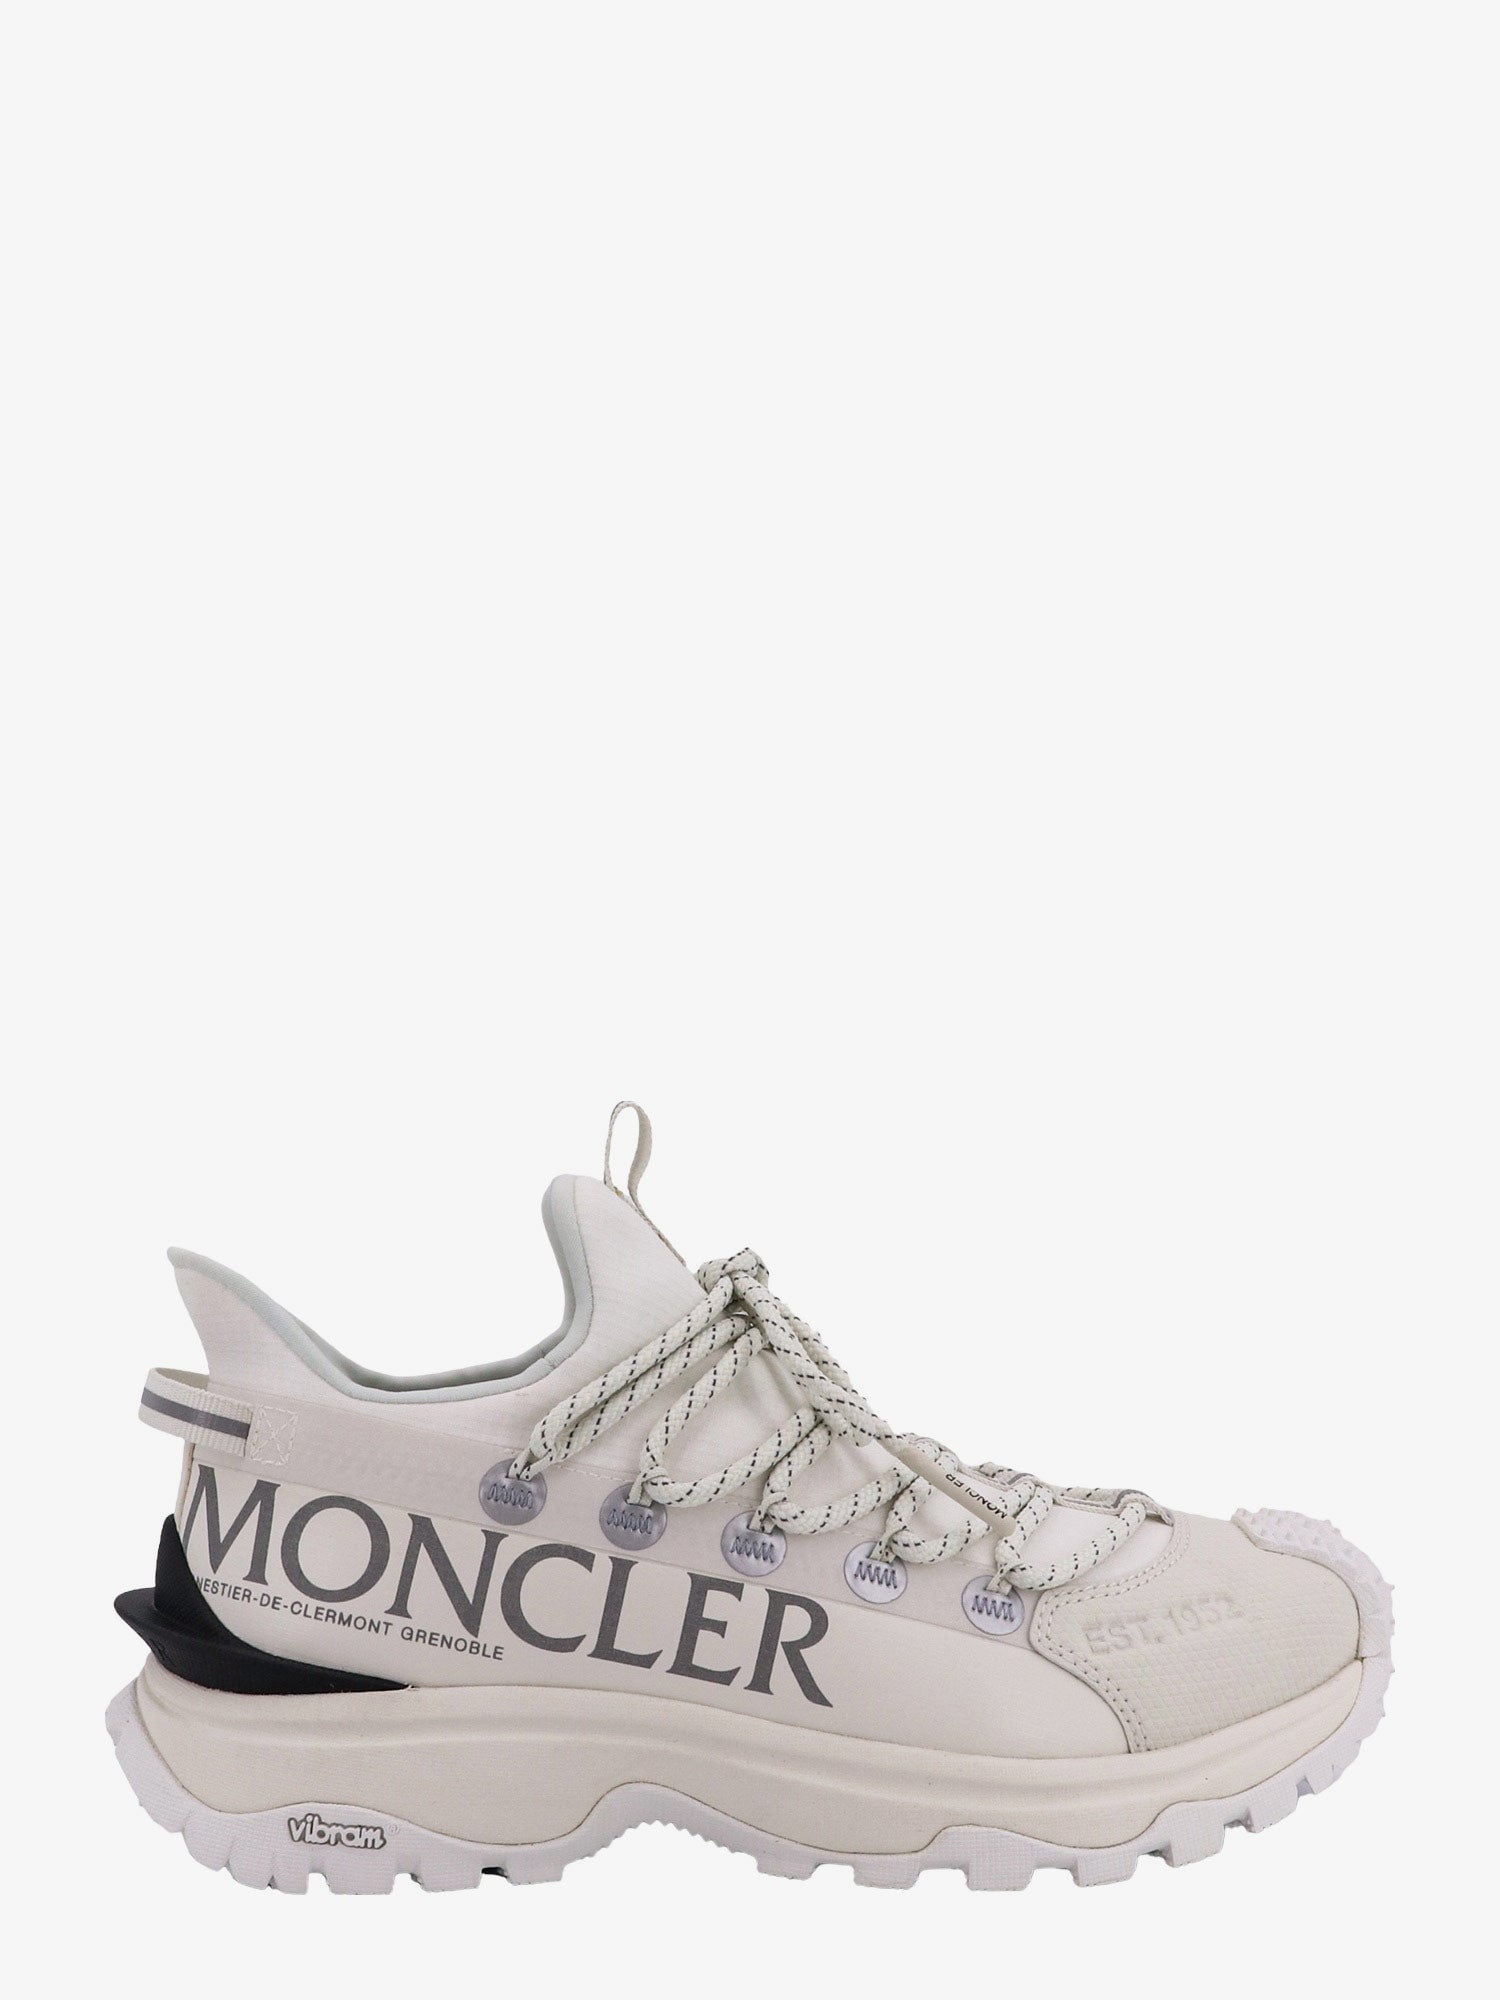 Moncler Woman Trailgrip Lite2 Woman White Sneakers - Walmart.com